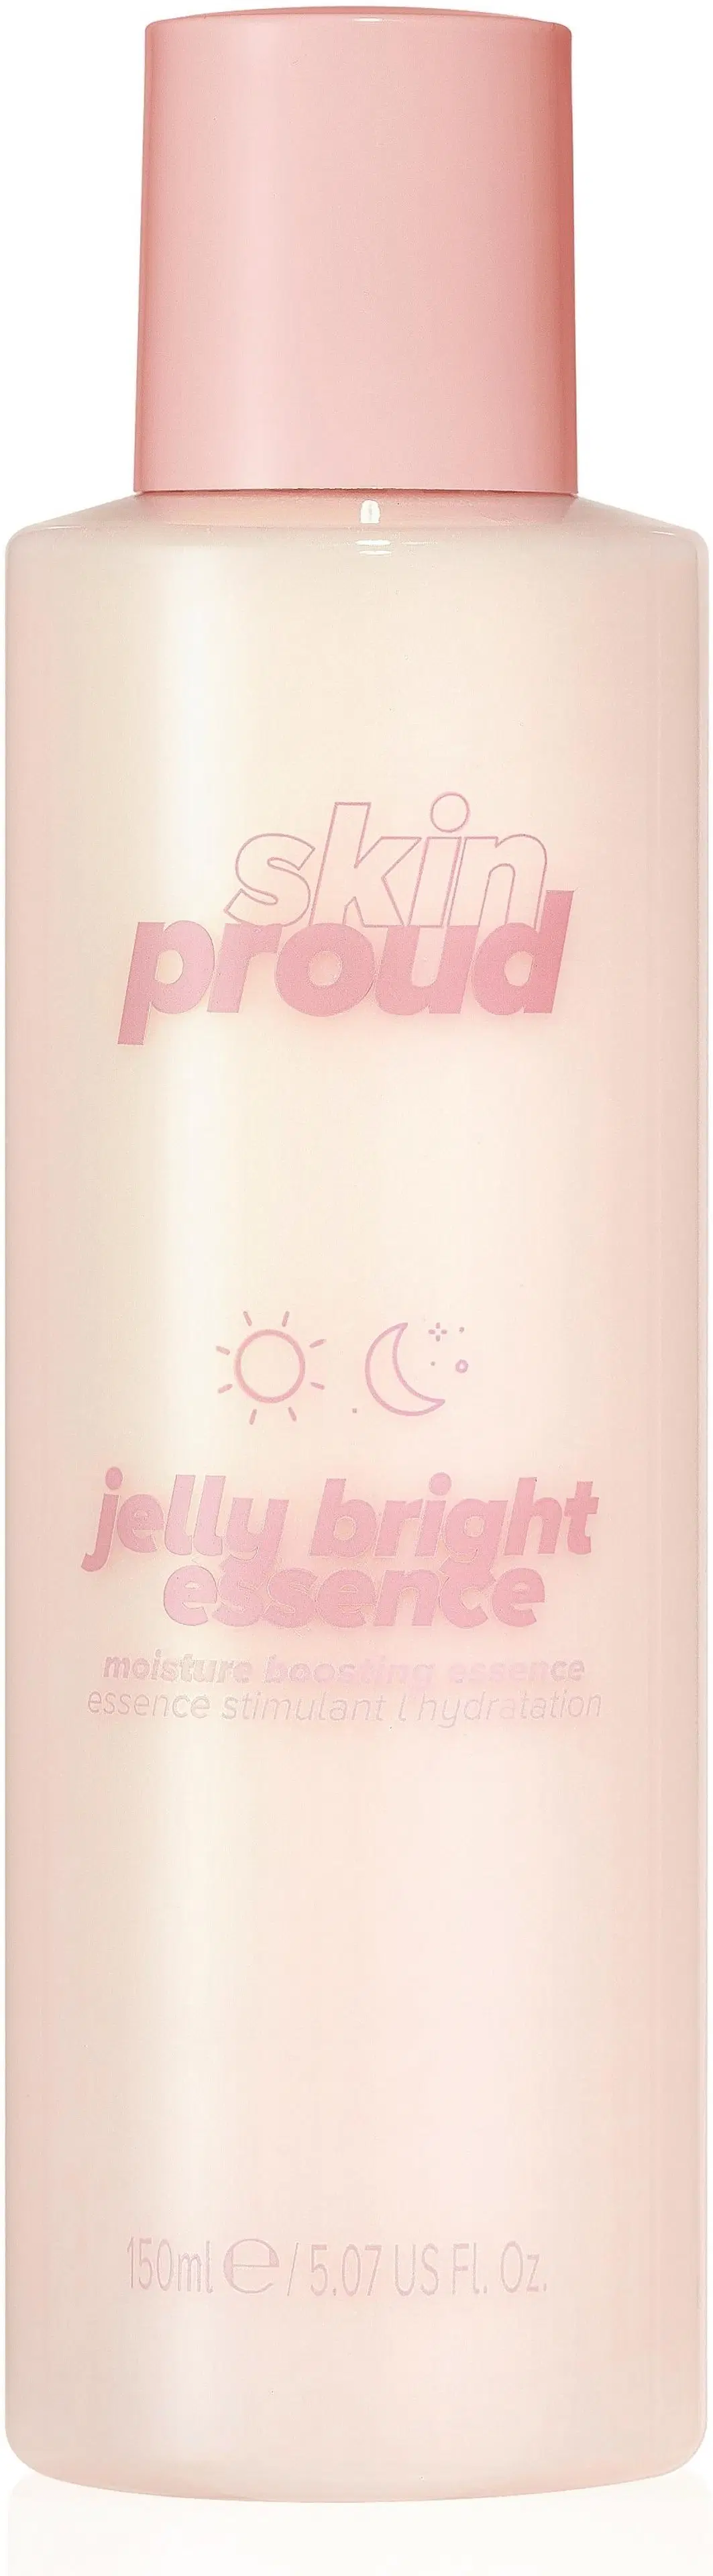 Skin Proud Jelly Bright Moisture Boosting Essence -kosteuttava kasvovesi 150ml